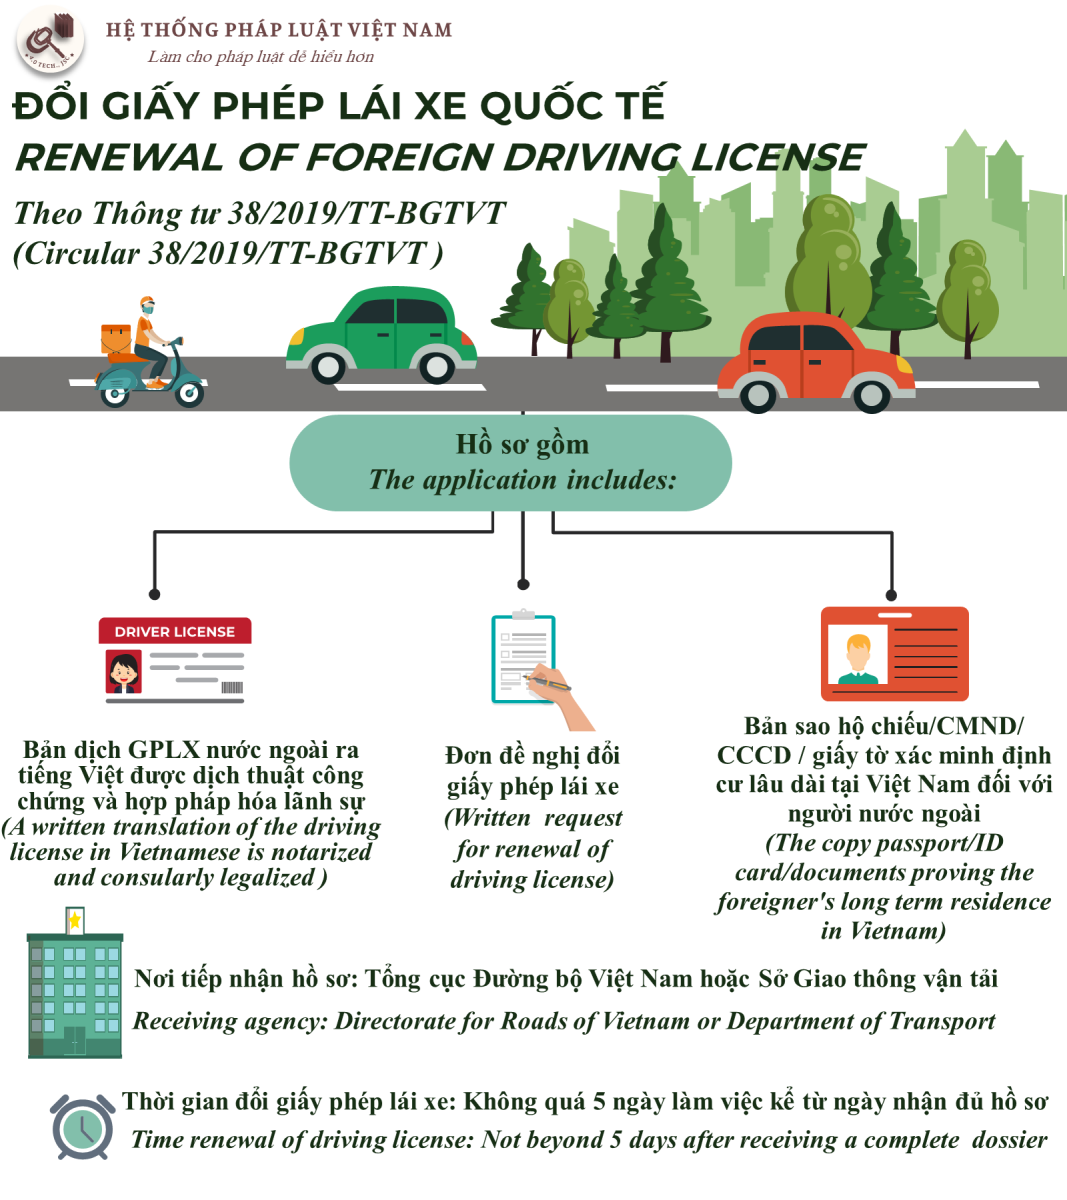 Hồ sơ đổi giấy phép lái xe quốc tế tại Việt nam (Application for changing an international driver's license in viet nam)